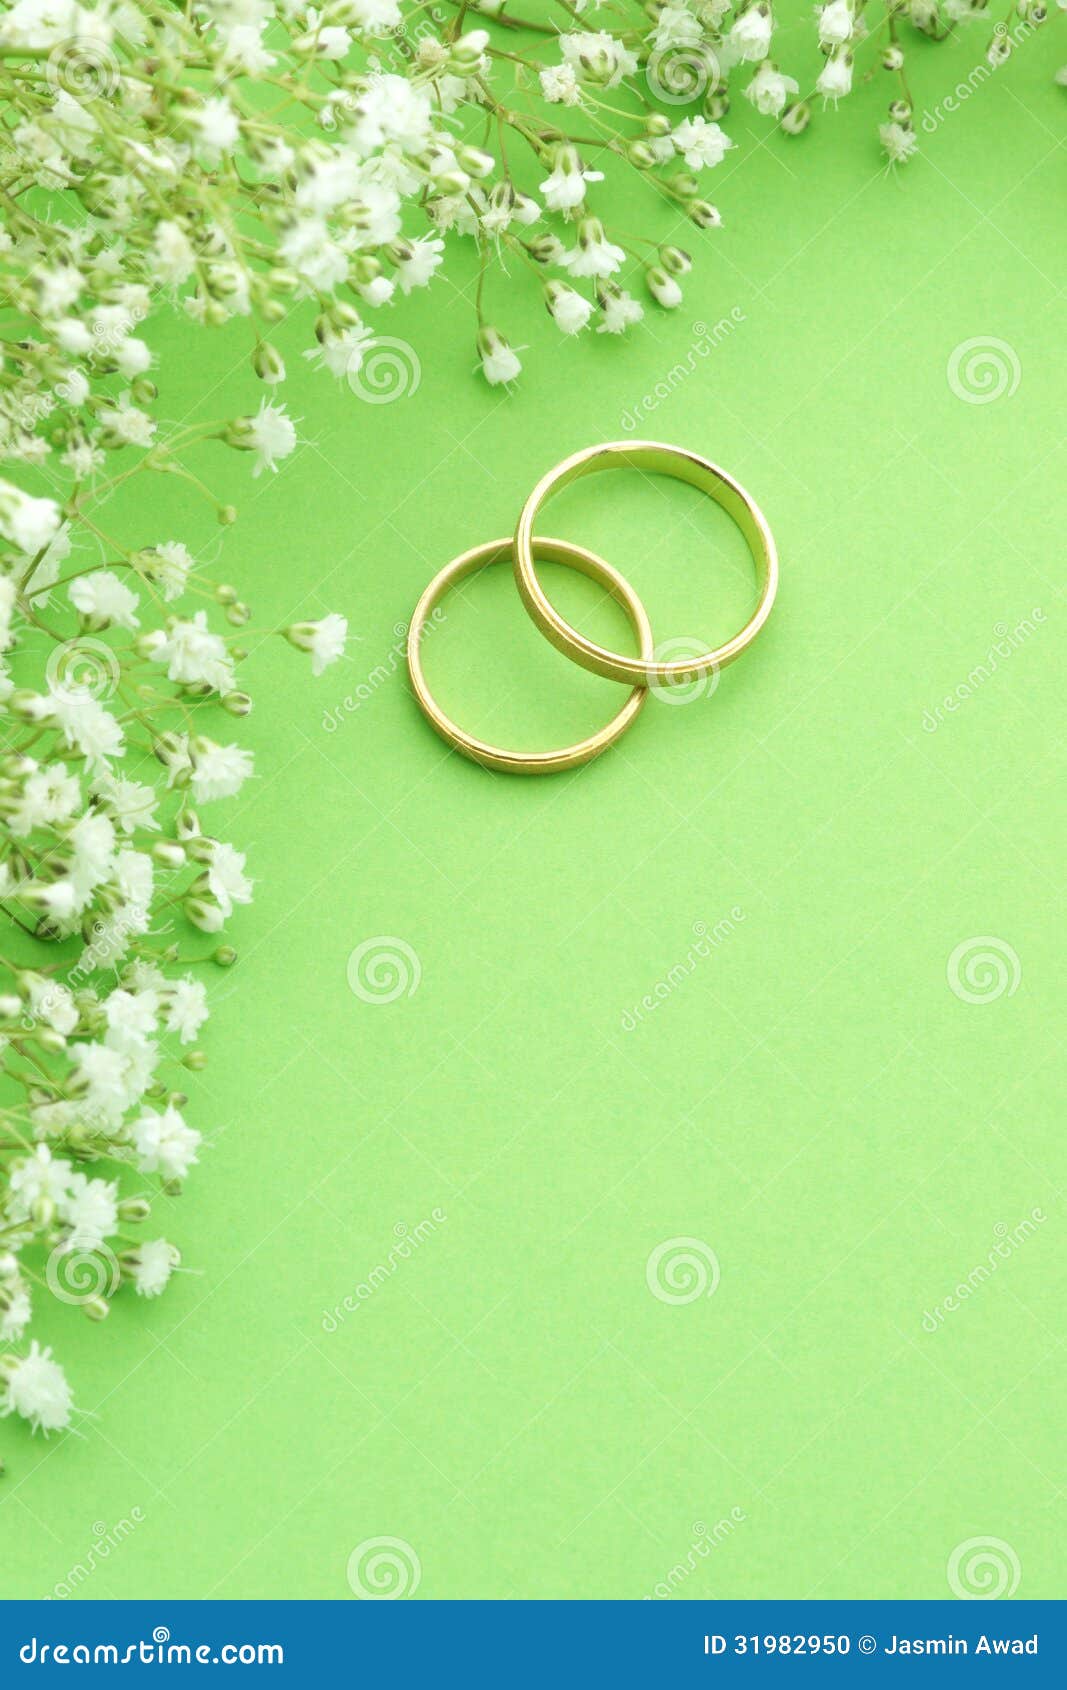 Wedding Invitation Stock Photo Image 31982950